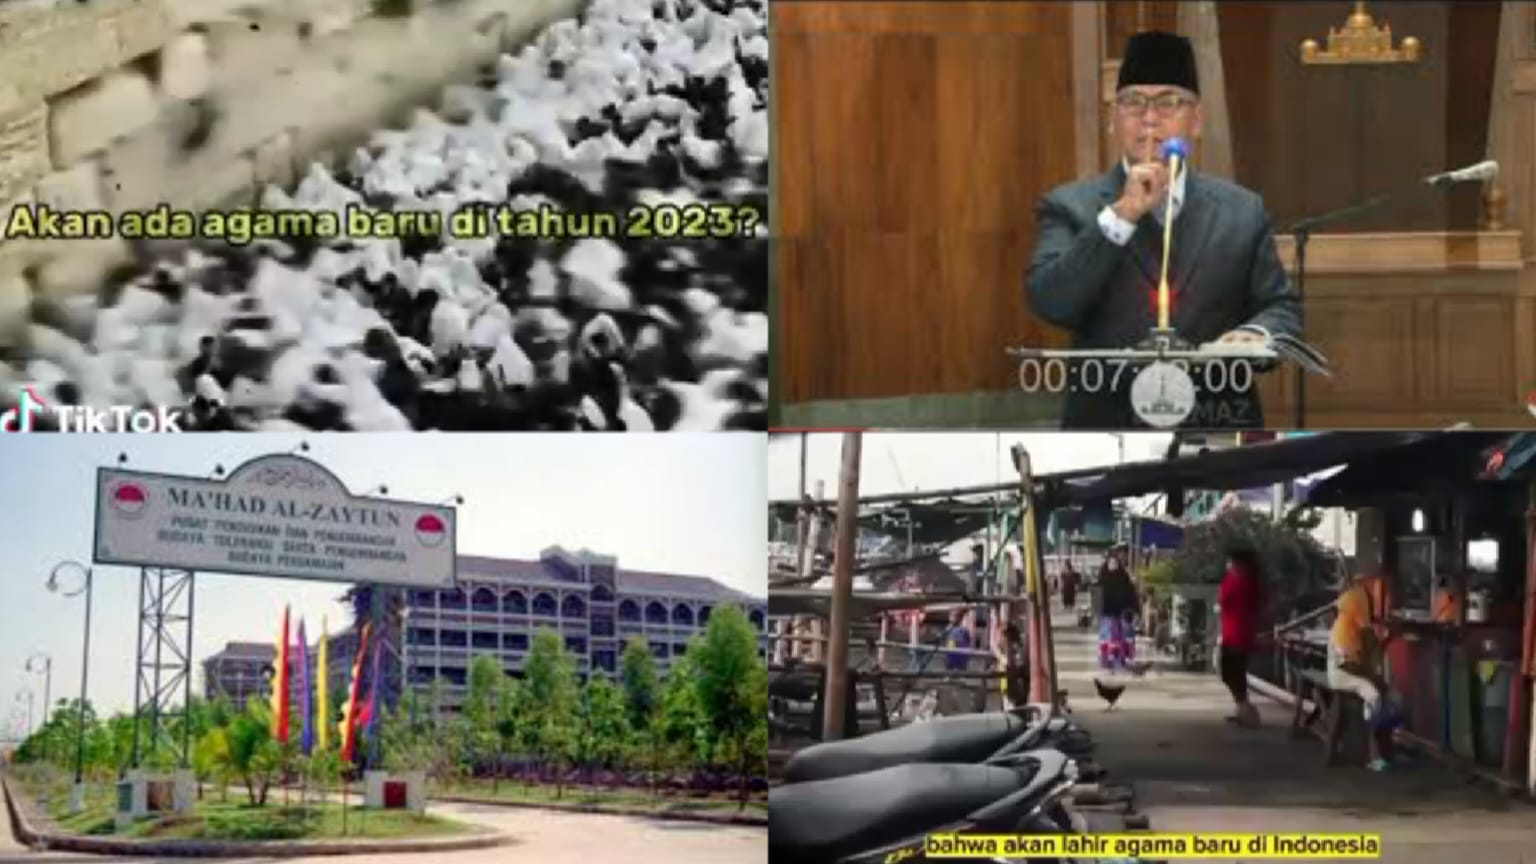 GAWAT! Indonesia Diprediksi Akan Miliki Agama Baru di Tahun 2023, Netizen Curigai Ponpes Al Zaytun?